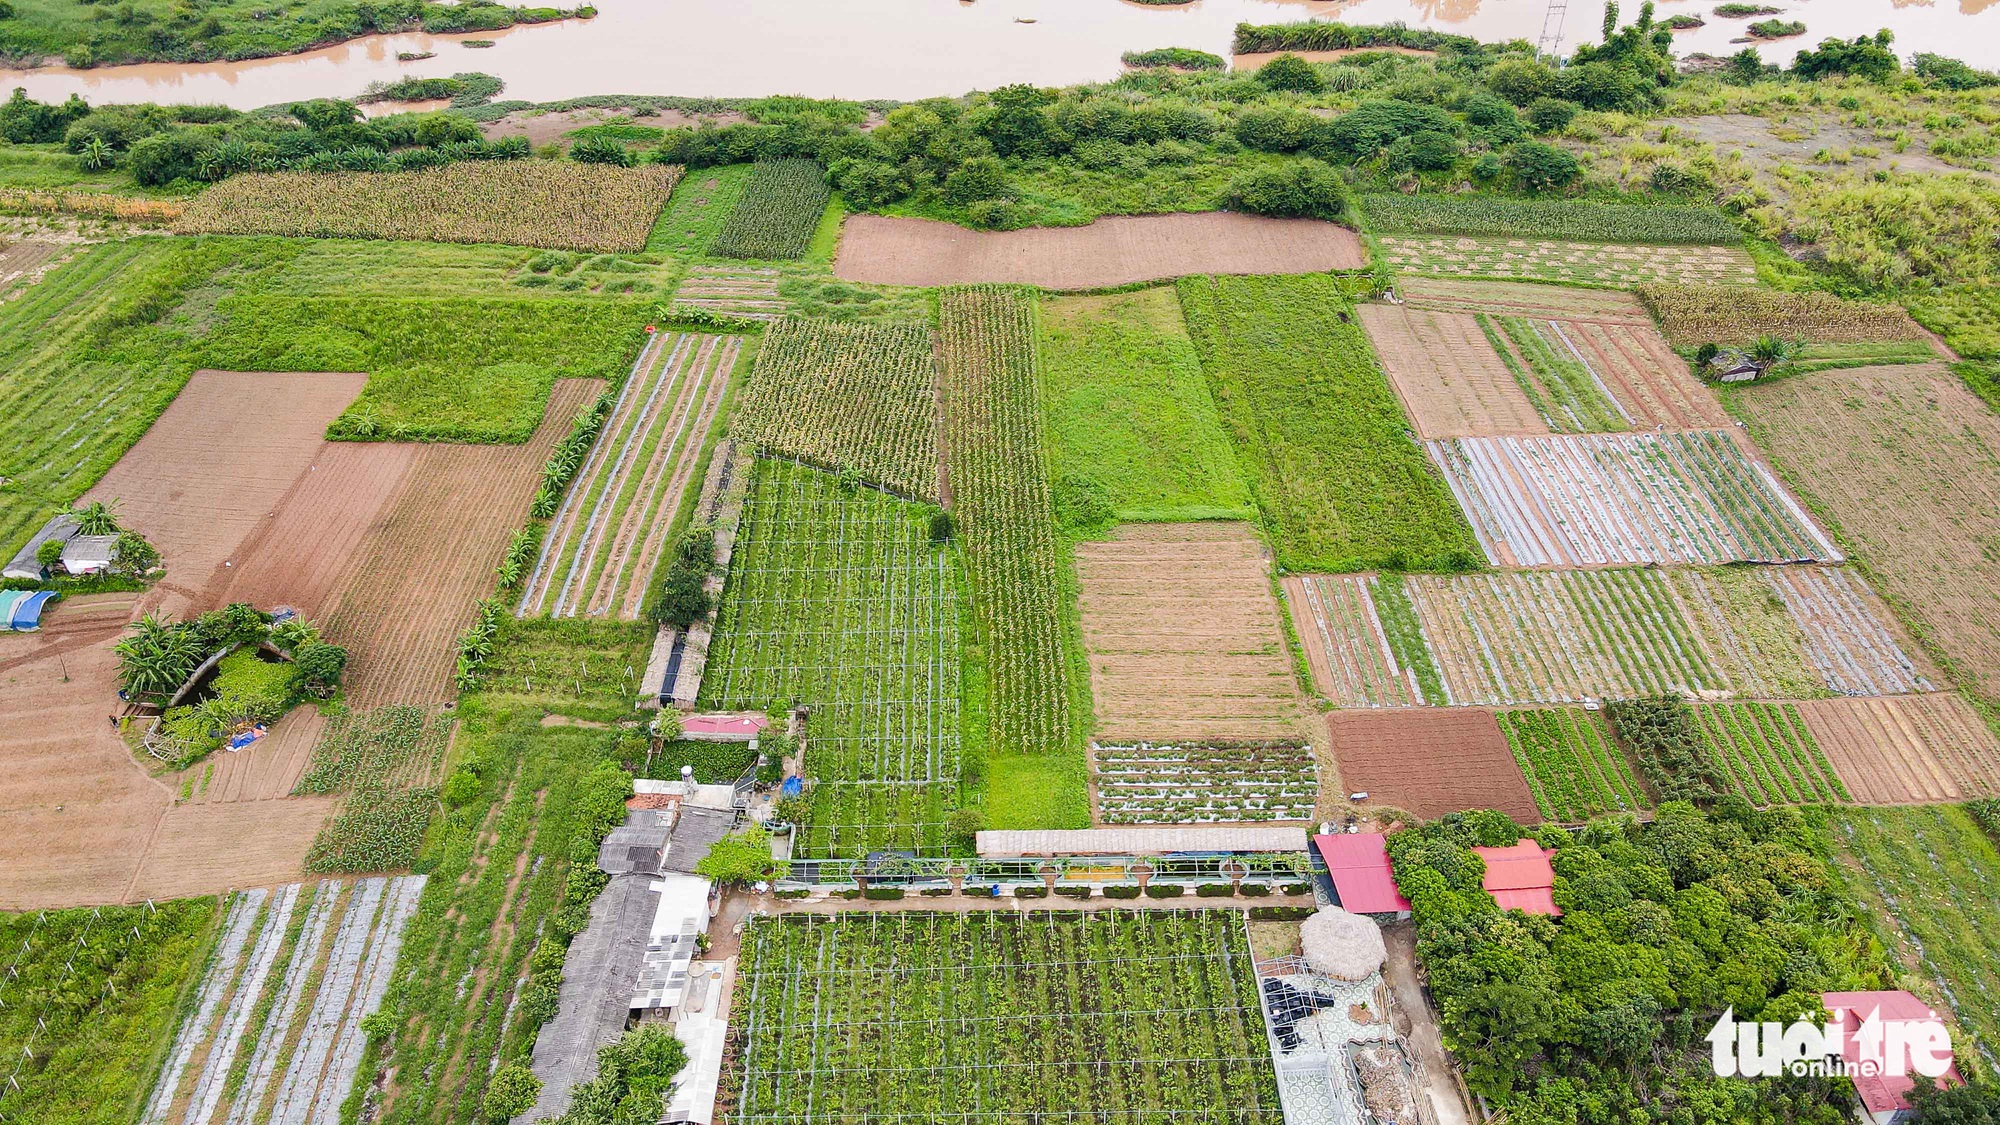 Cận cảnh dự án khu đô thị hơn 3.000 tỉ đồng ở Lạng Sơn dính nhiều lùm xùm - Ảnh 5.